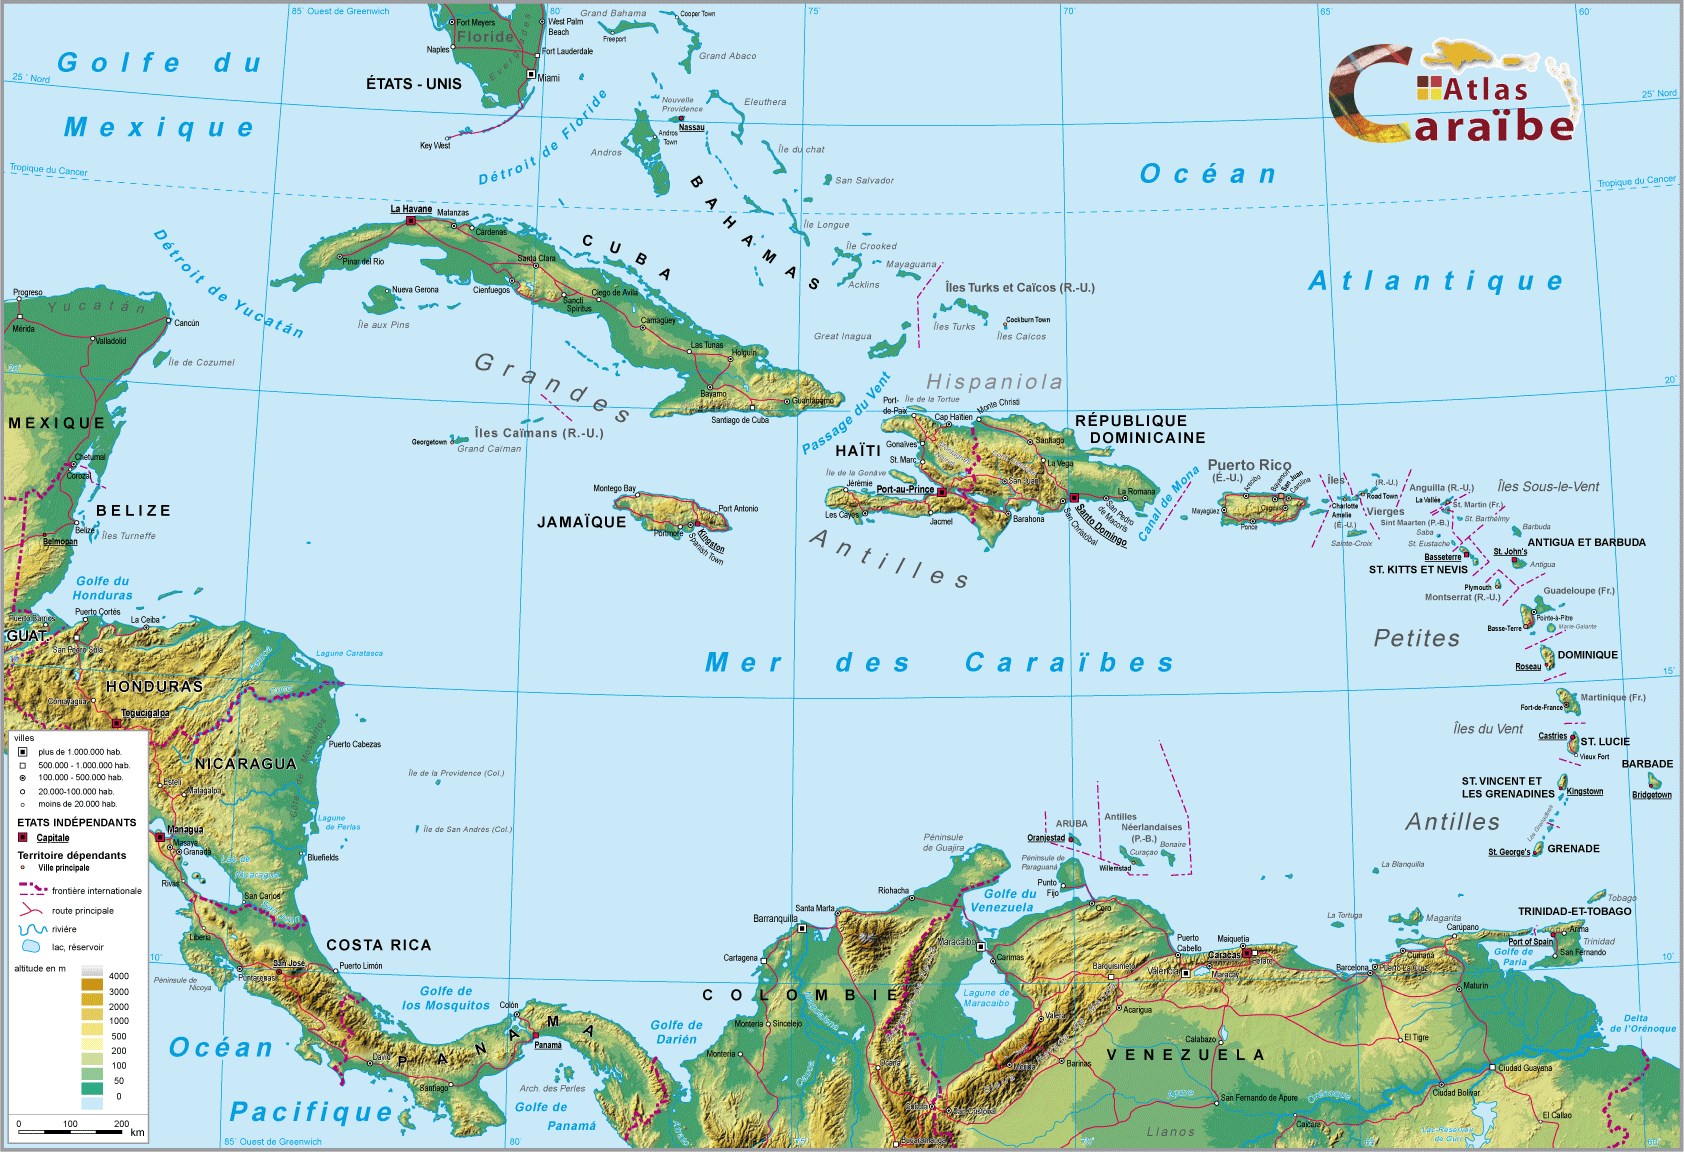 Atlas Caraïbe